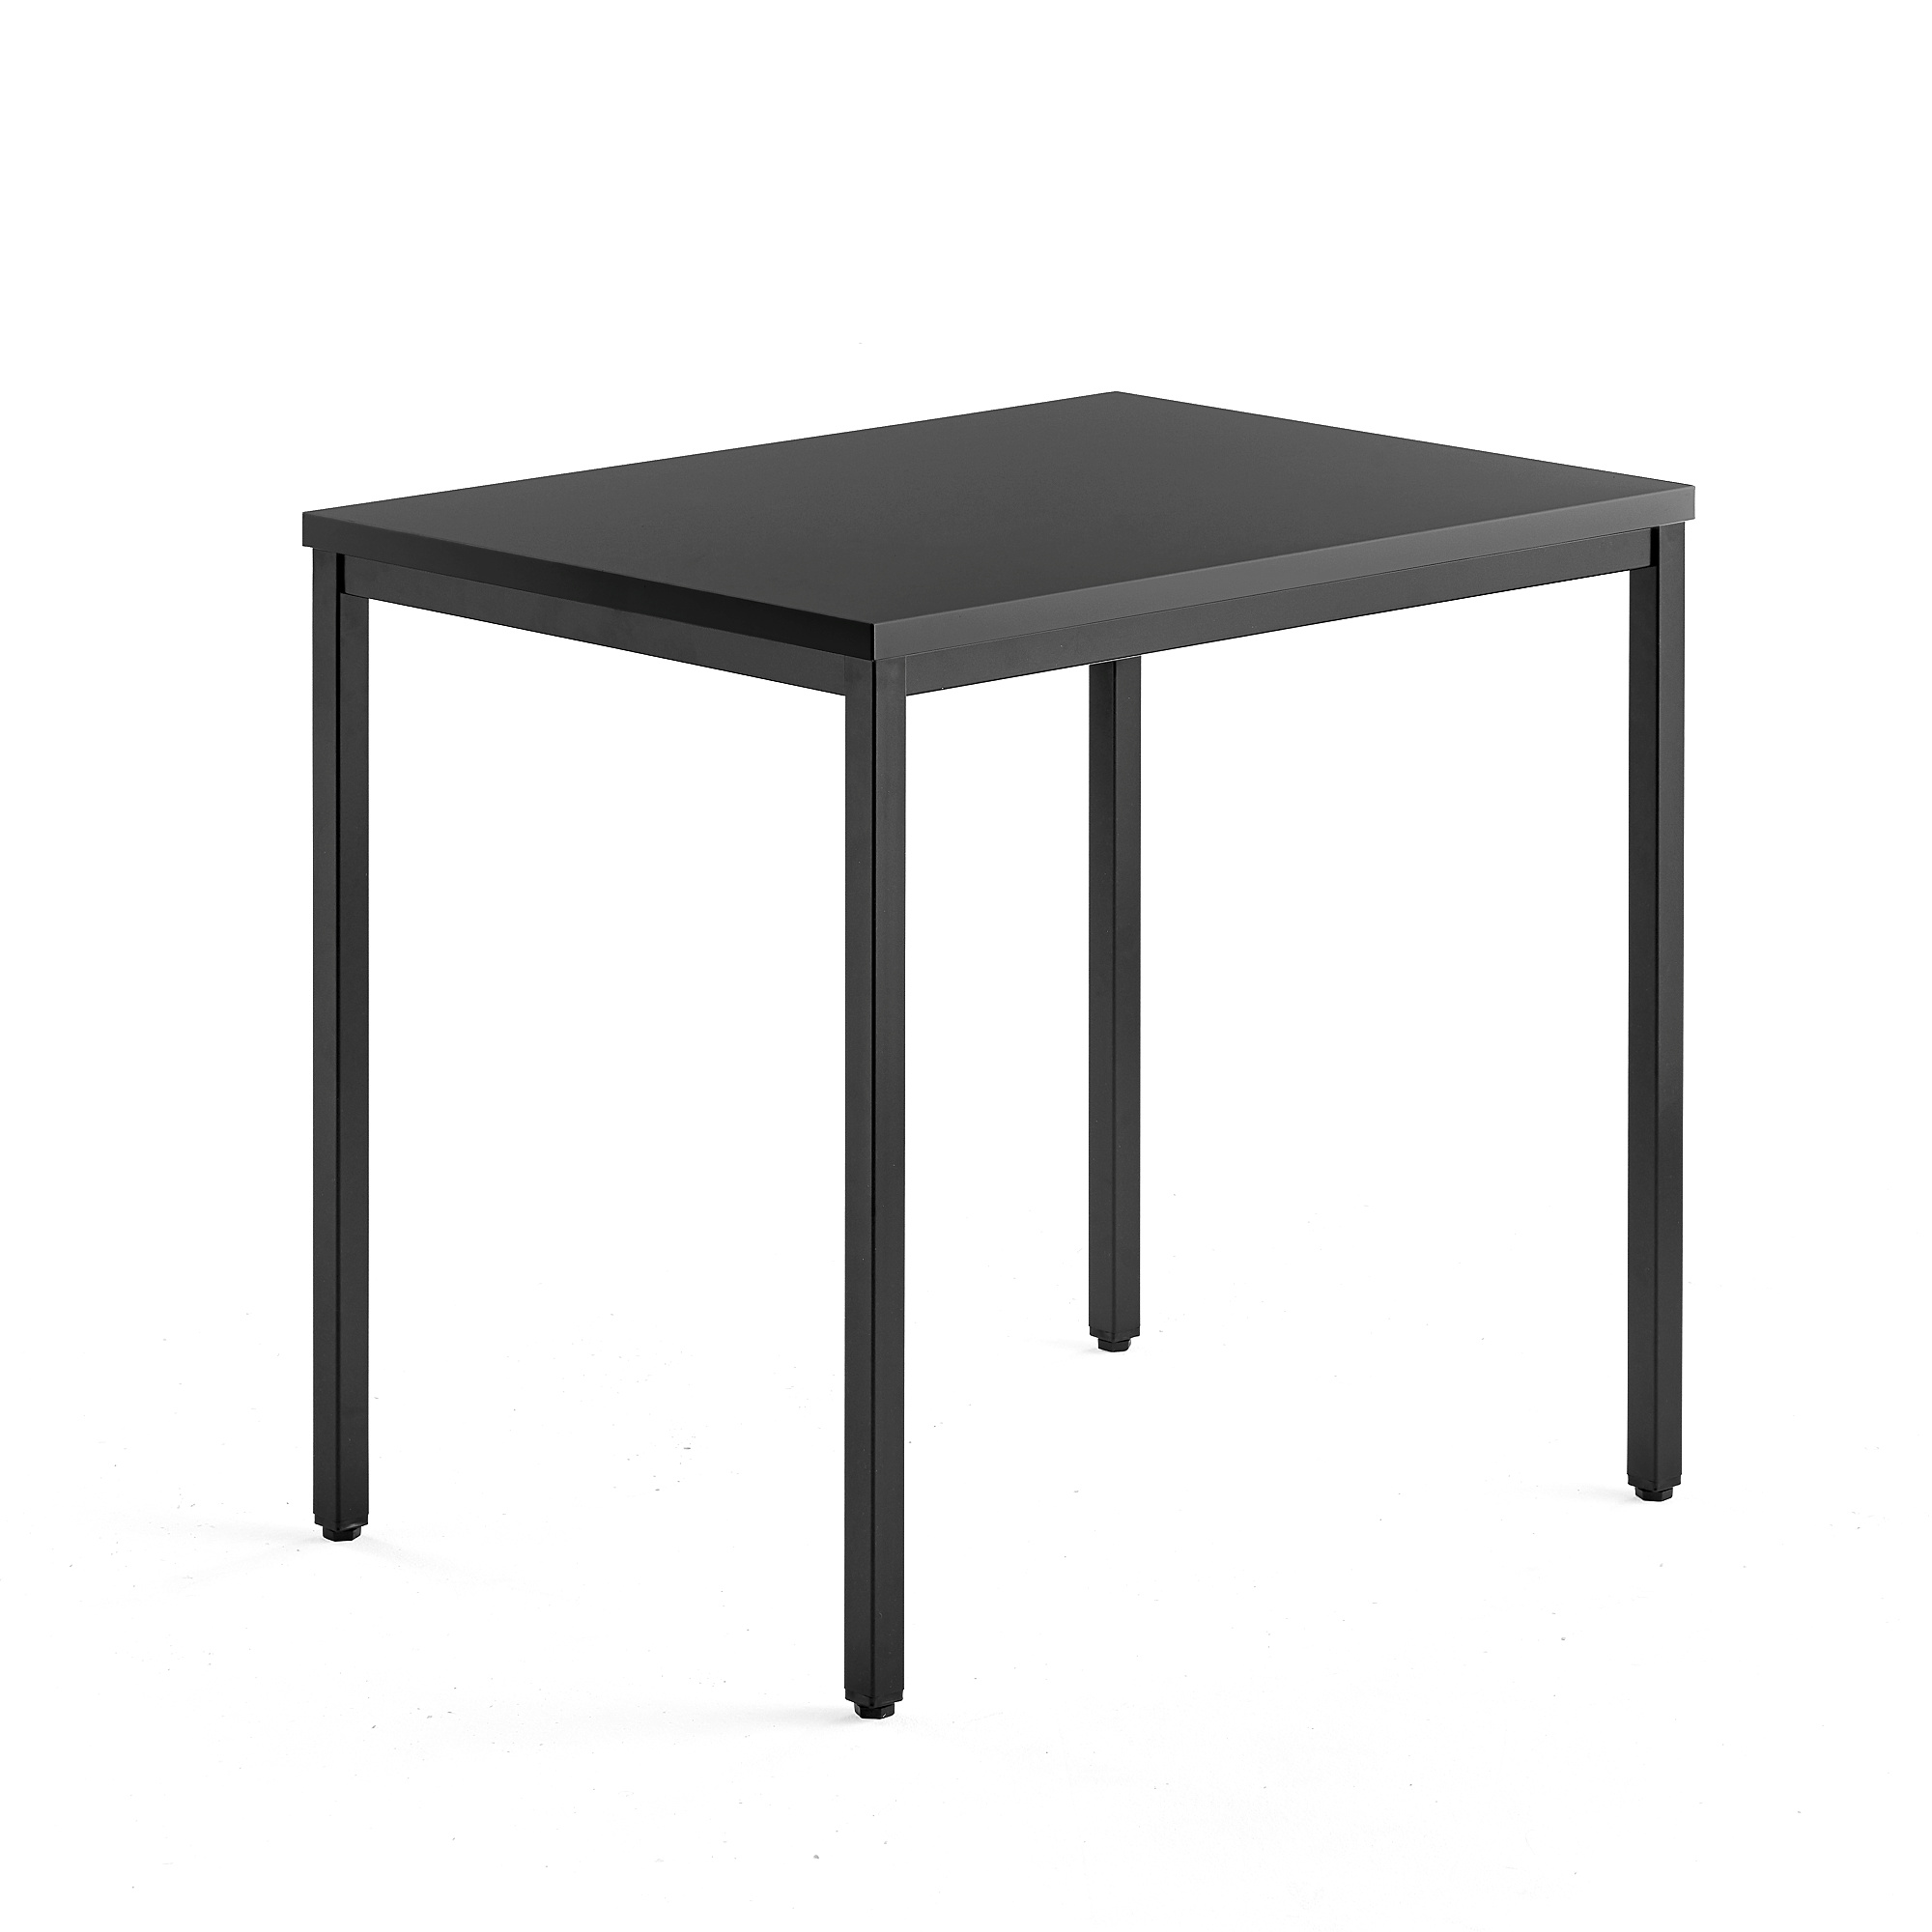 Přídavný stůl QBUS, 4 nohy, 800x600 mm, černý rám, černá